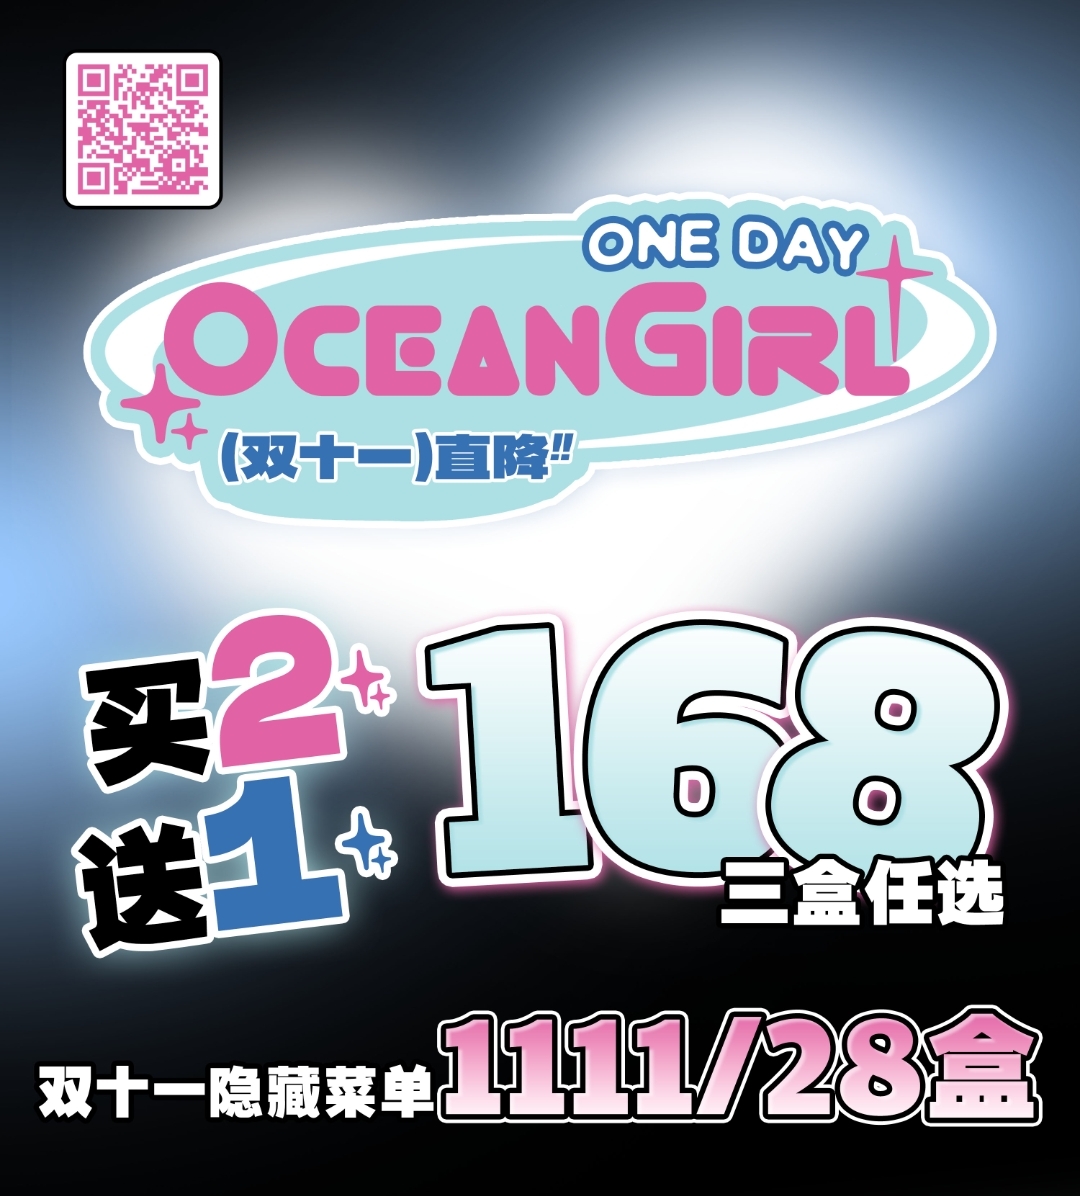 【日抛】Oceangirl 大眼女孩们的节日狂欢 双十一狂欢购